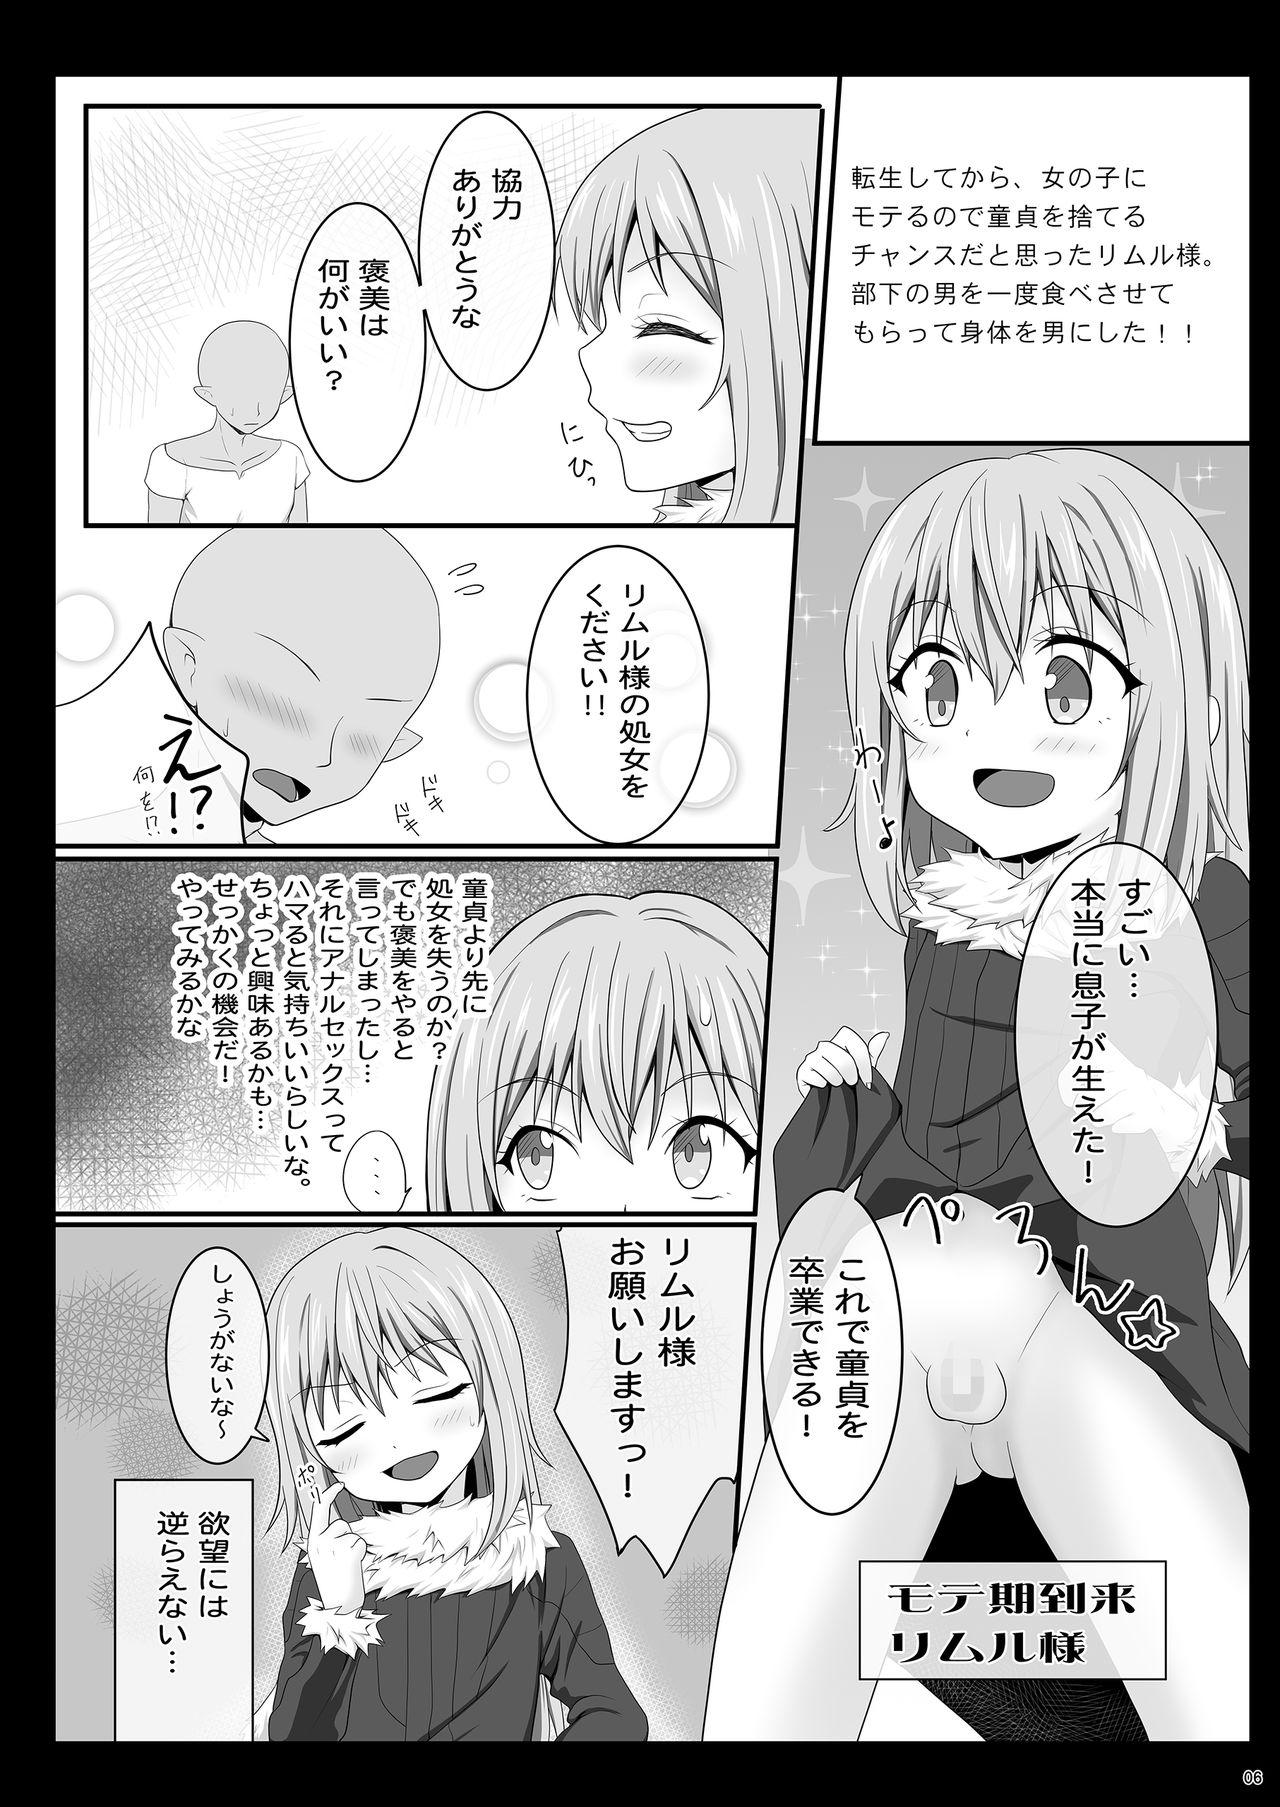 Gaybukkake Etchina Rimuru-sama No Matome - Tensei shitara slime datta ken Milf Cougar - Page 5